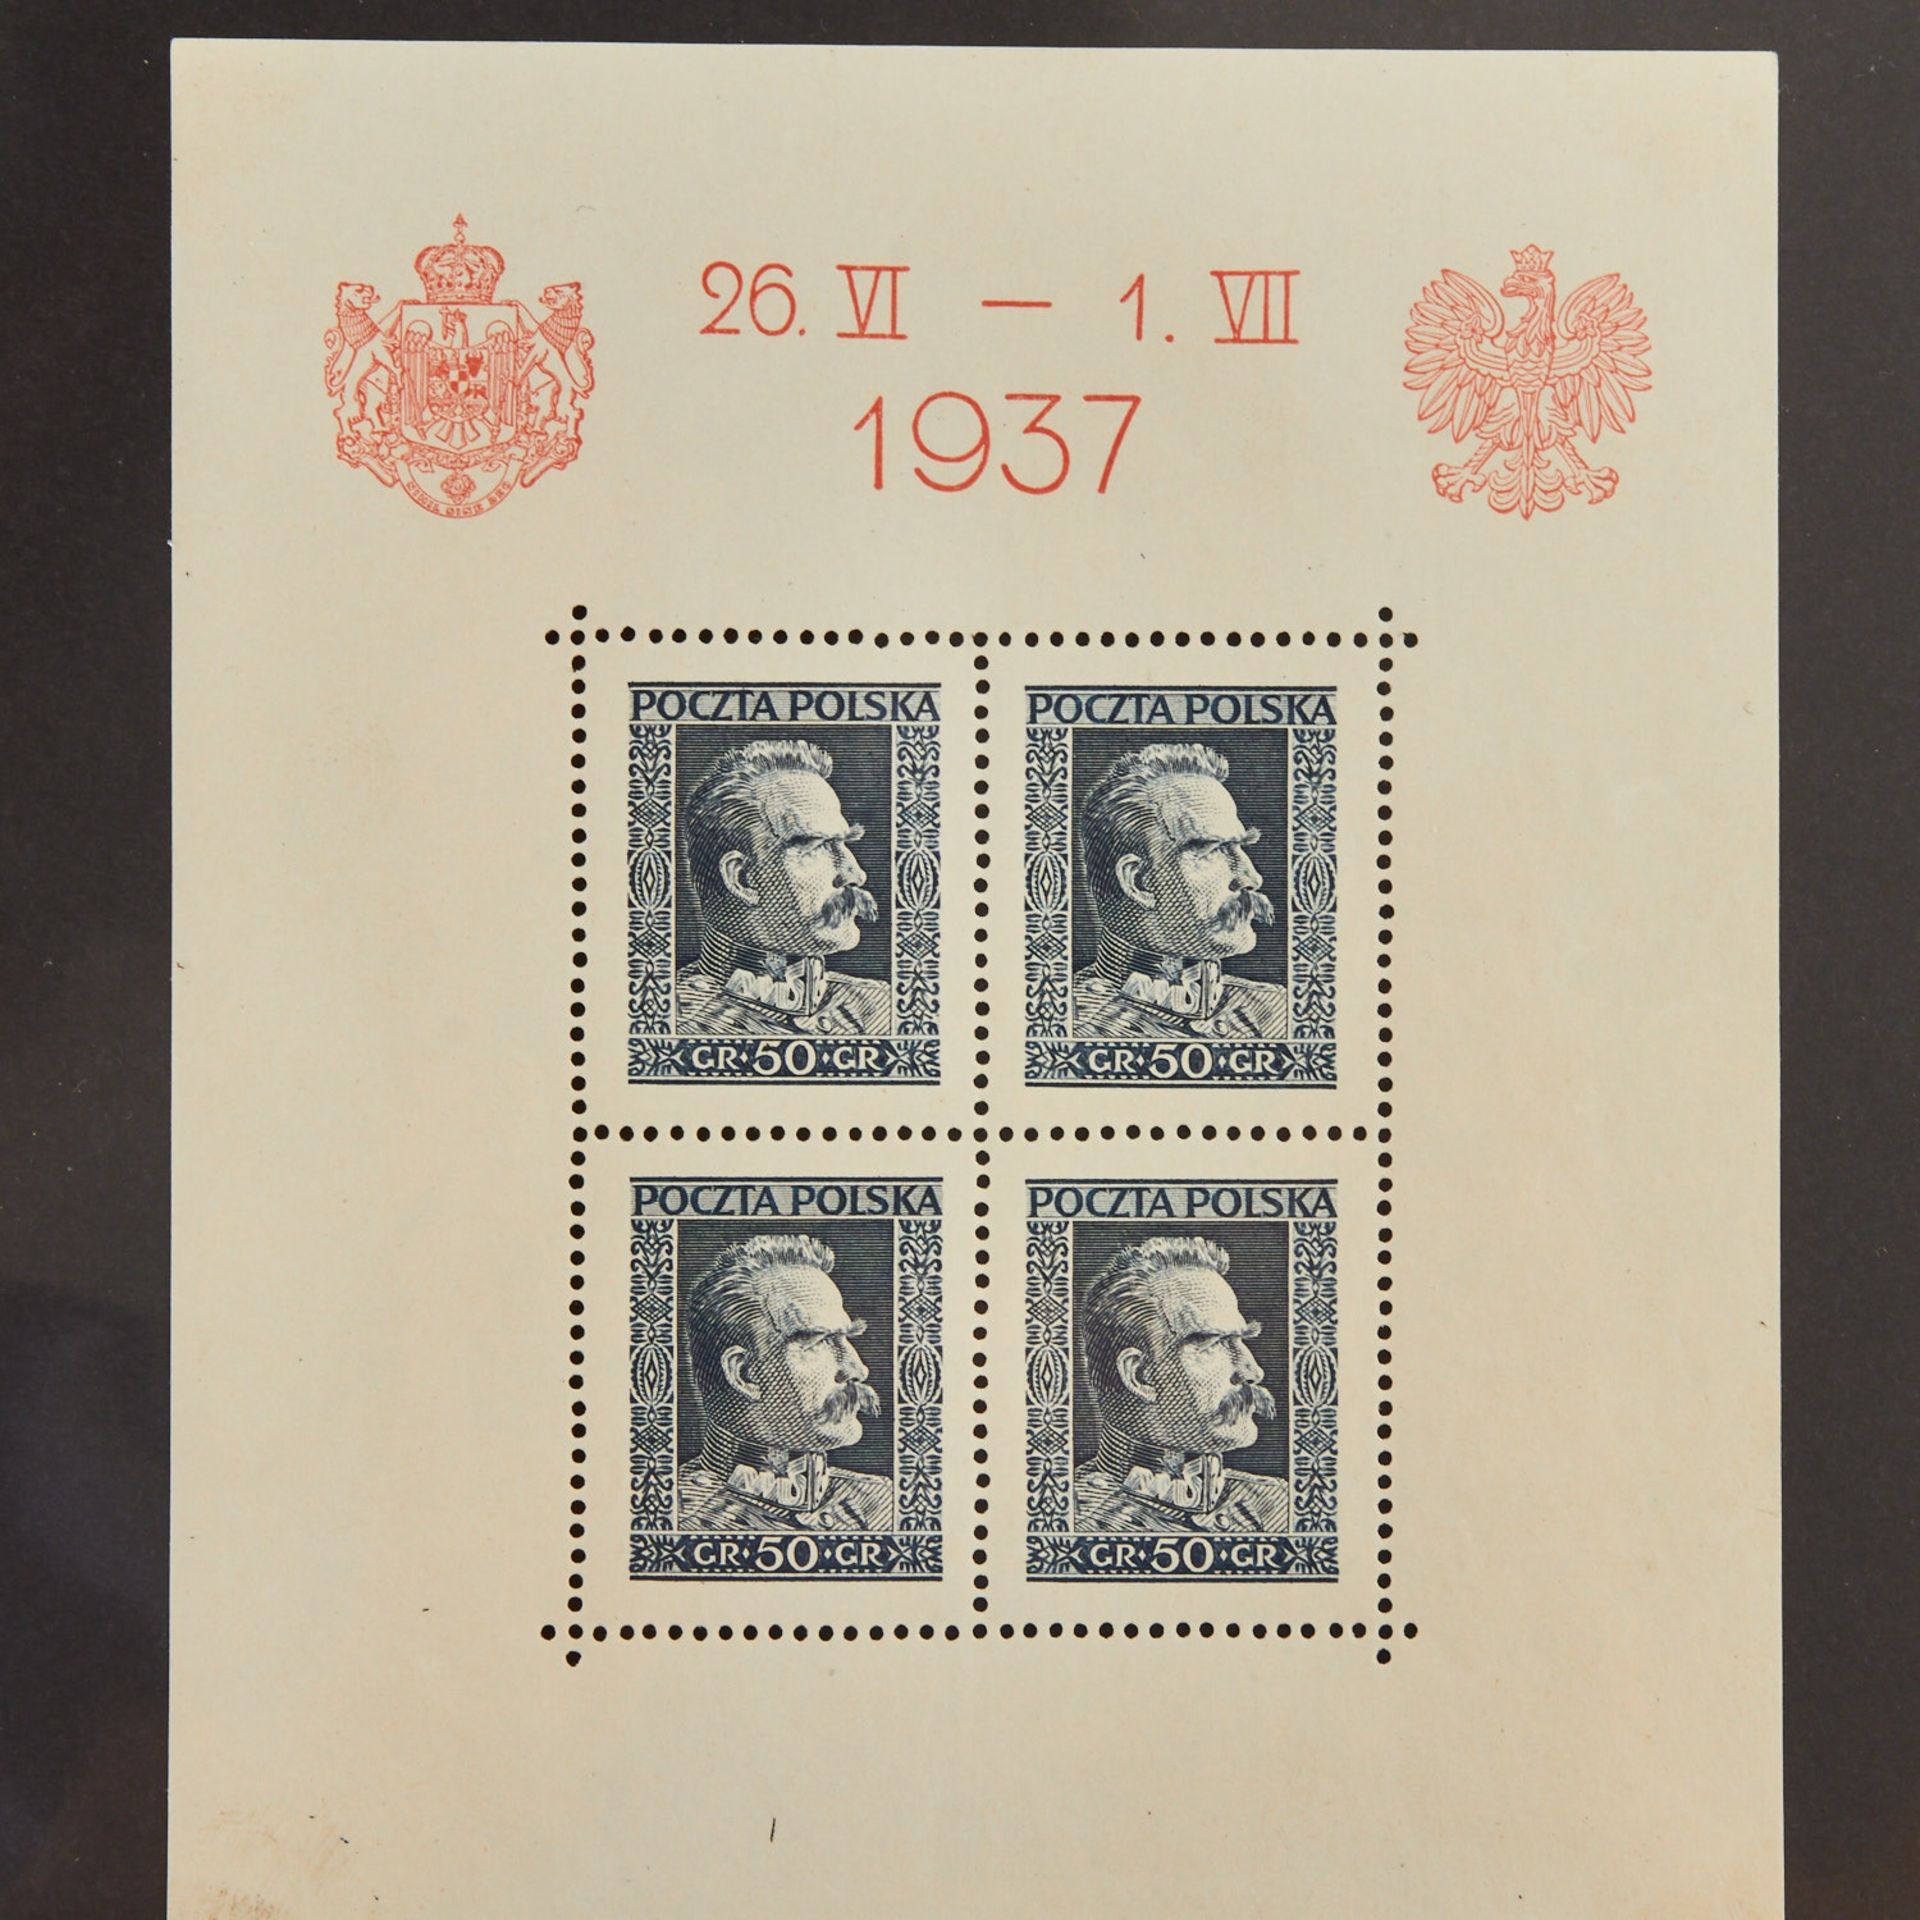 Polen - 1937, Block 2, 3 x postfrisch;Block 3, 2 x postfrisch ( 1 x min. Einschränkung); Block 4, - Bild 3 aus 4